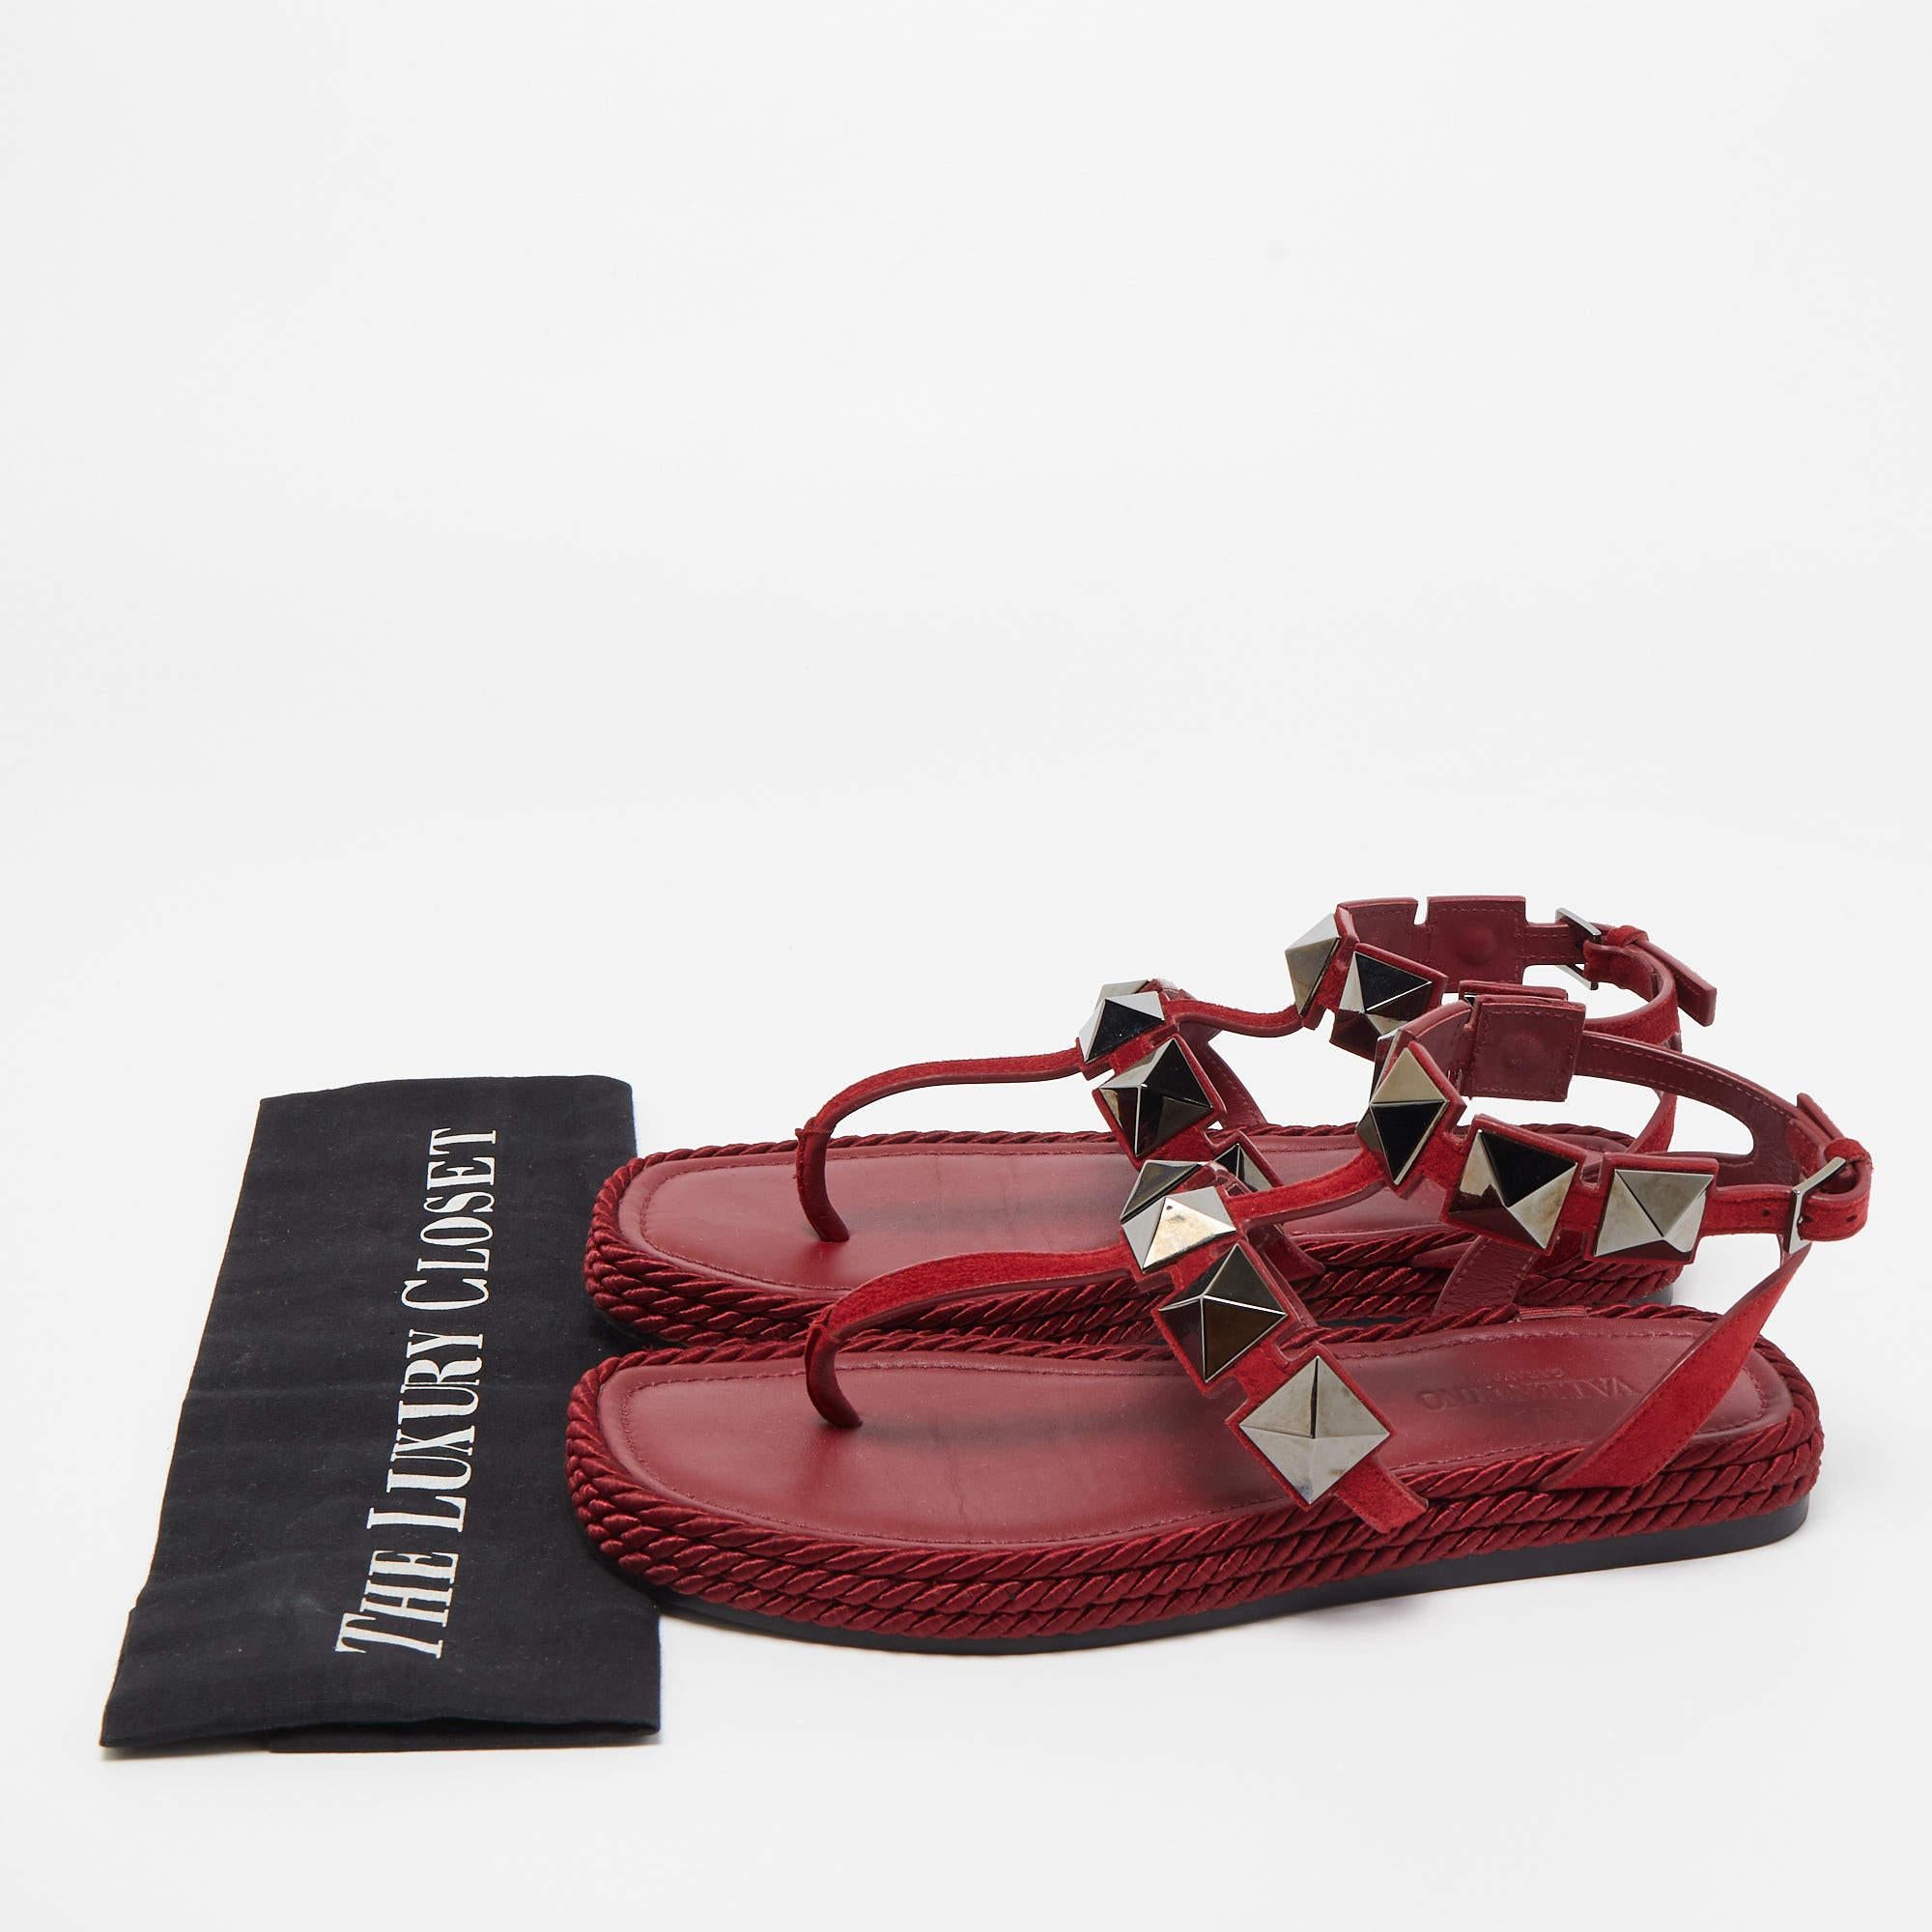 Valentino Dark Red Suede Roman Stud Espadrille Thong Sandals Size 37 5